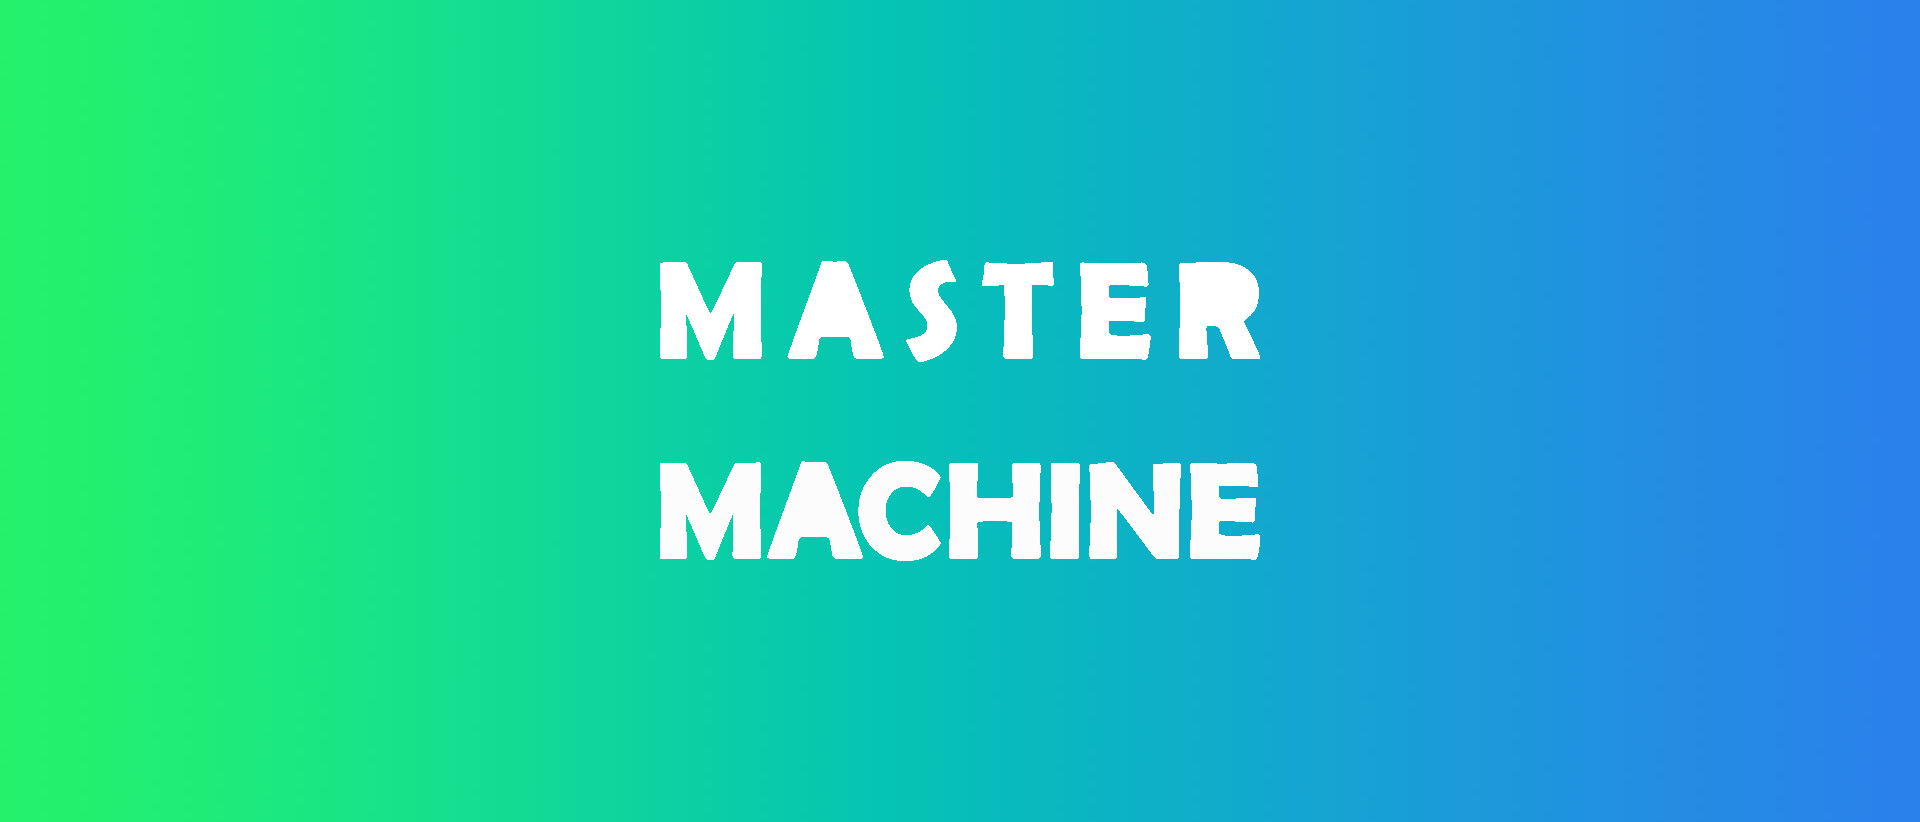 Master Machine